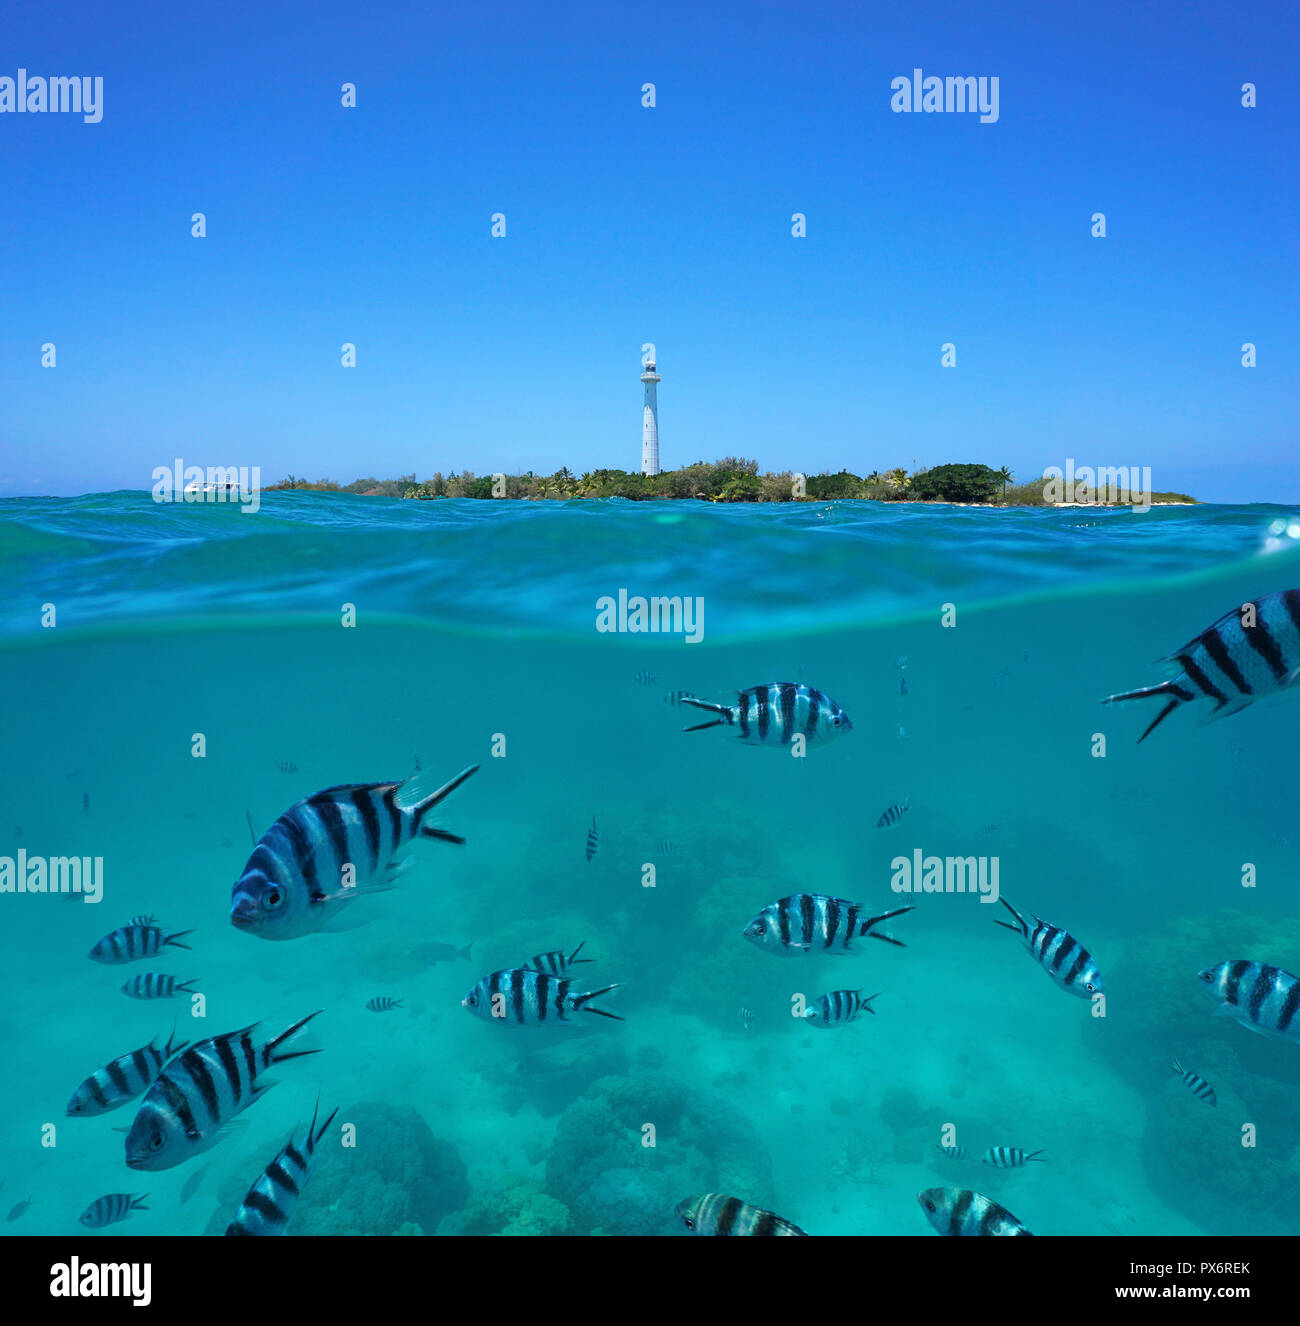 Sergente Scissortail pesce subacquei con Amedee isola e faro, vista suddivisa a metà al di sopra e al di sotto della superficie dell'acqua, Nuova Caledonia, Sud Pacifico Foto Stock